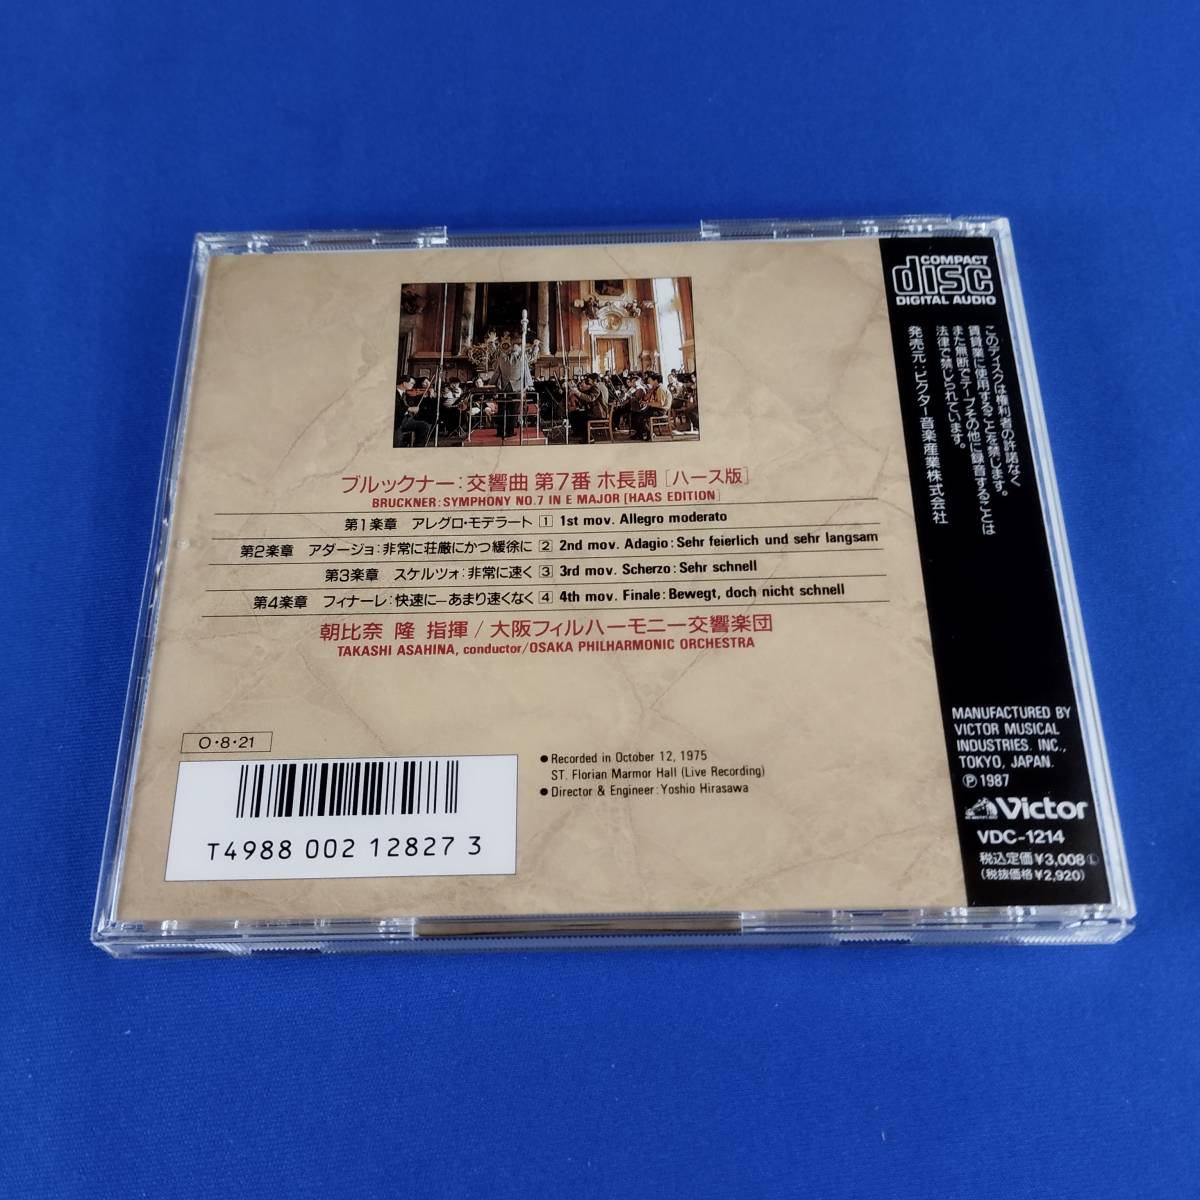 1SC13 CD 朝比奈隆 大阪フィルハーモニー交響楽団 聖フローリアンのブルックナー 交響曲第7番ホ長調_画像2